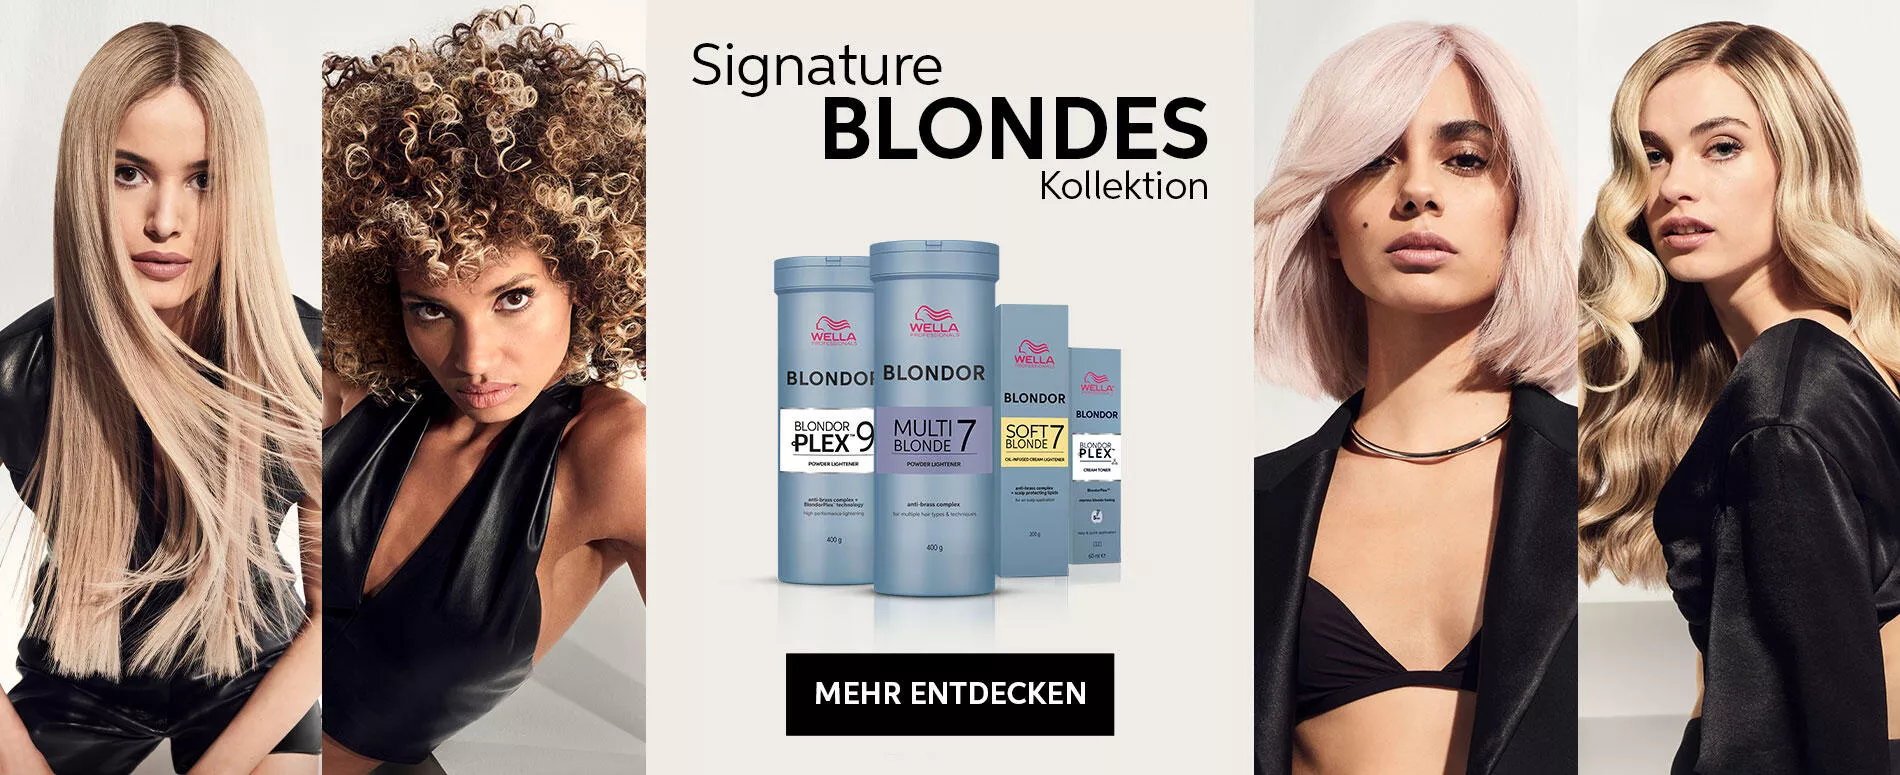 Vier Modelle in Einzelabbildungen mit der Wella Professionals Signature Blondes Blondor Range in der Mitte. Ein Modell mit langen, glatten blonden Haaren. Ein Model mit afro-lockigen blonden Haaren, ein Model mit pink-blonden, kurzen Haaren. Ein Model mit blonden Locken.